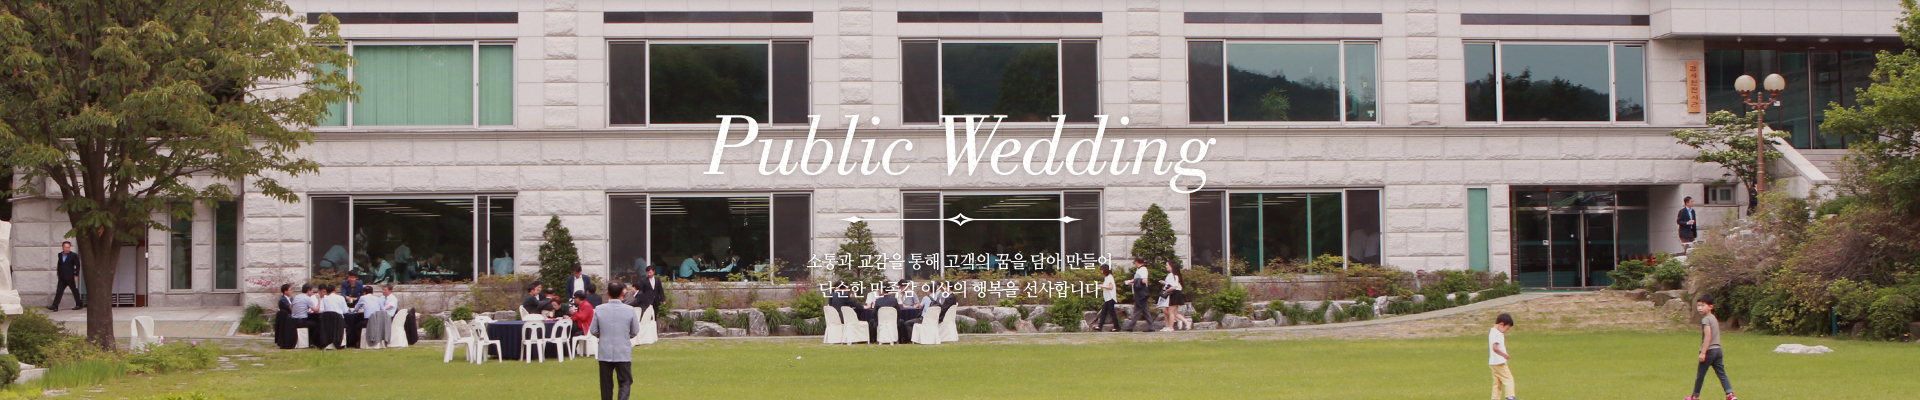 Public Wedding